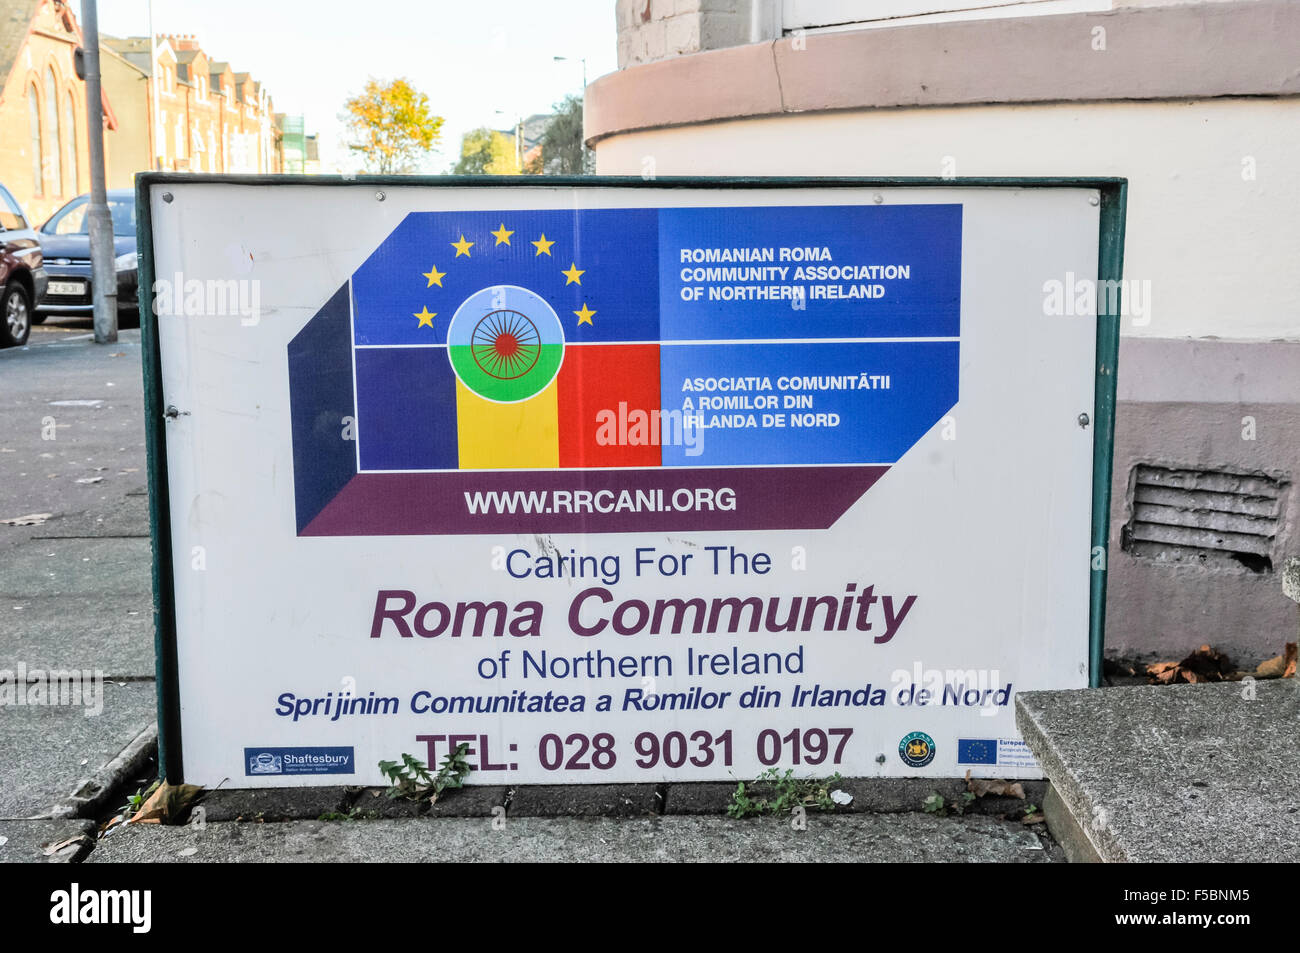 Rumänische Roma Community Association of Northern Ireland. Stockfoto